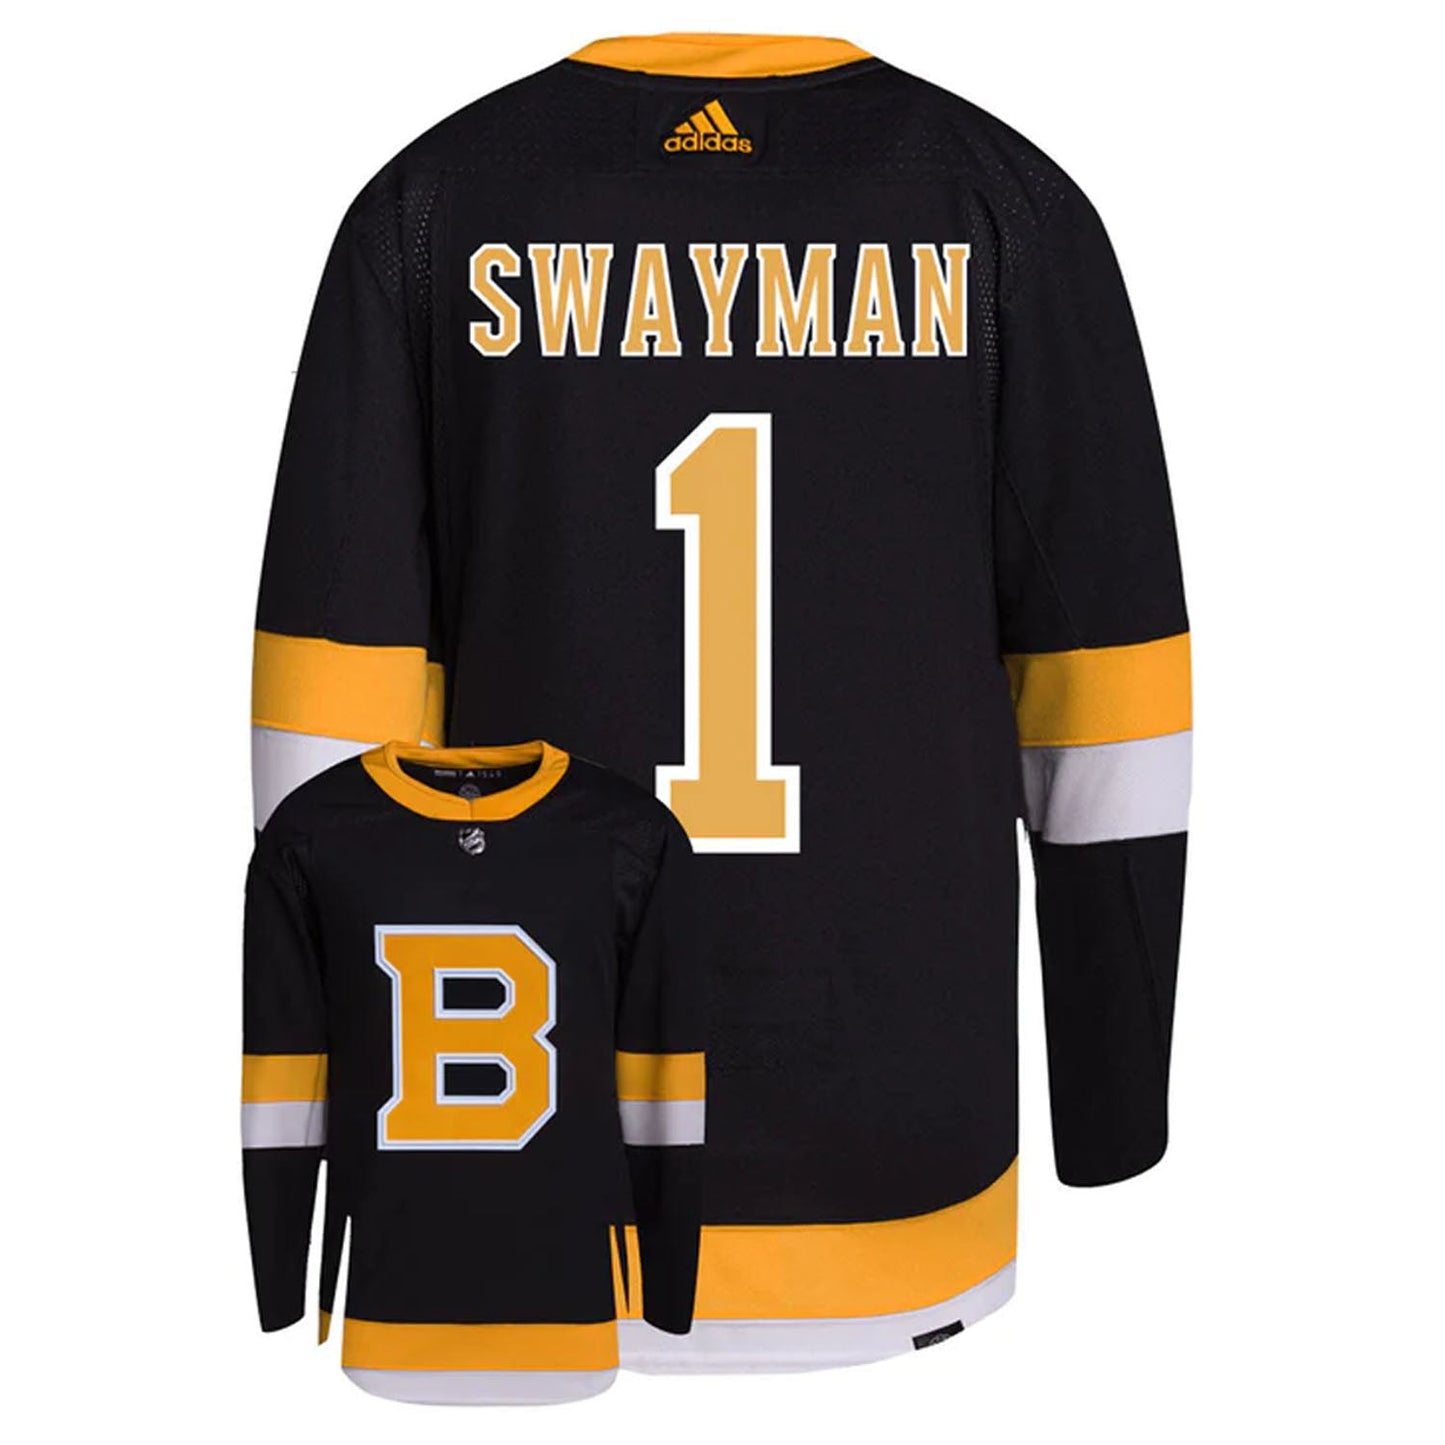 NHL Jeremy Swayman Boston Bruins 1 Jersey